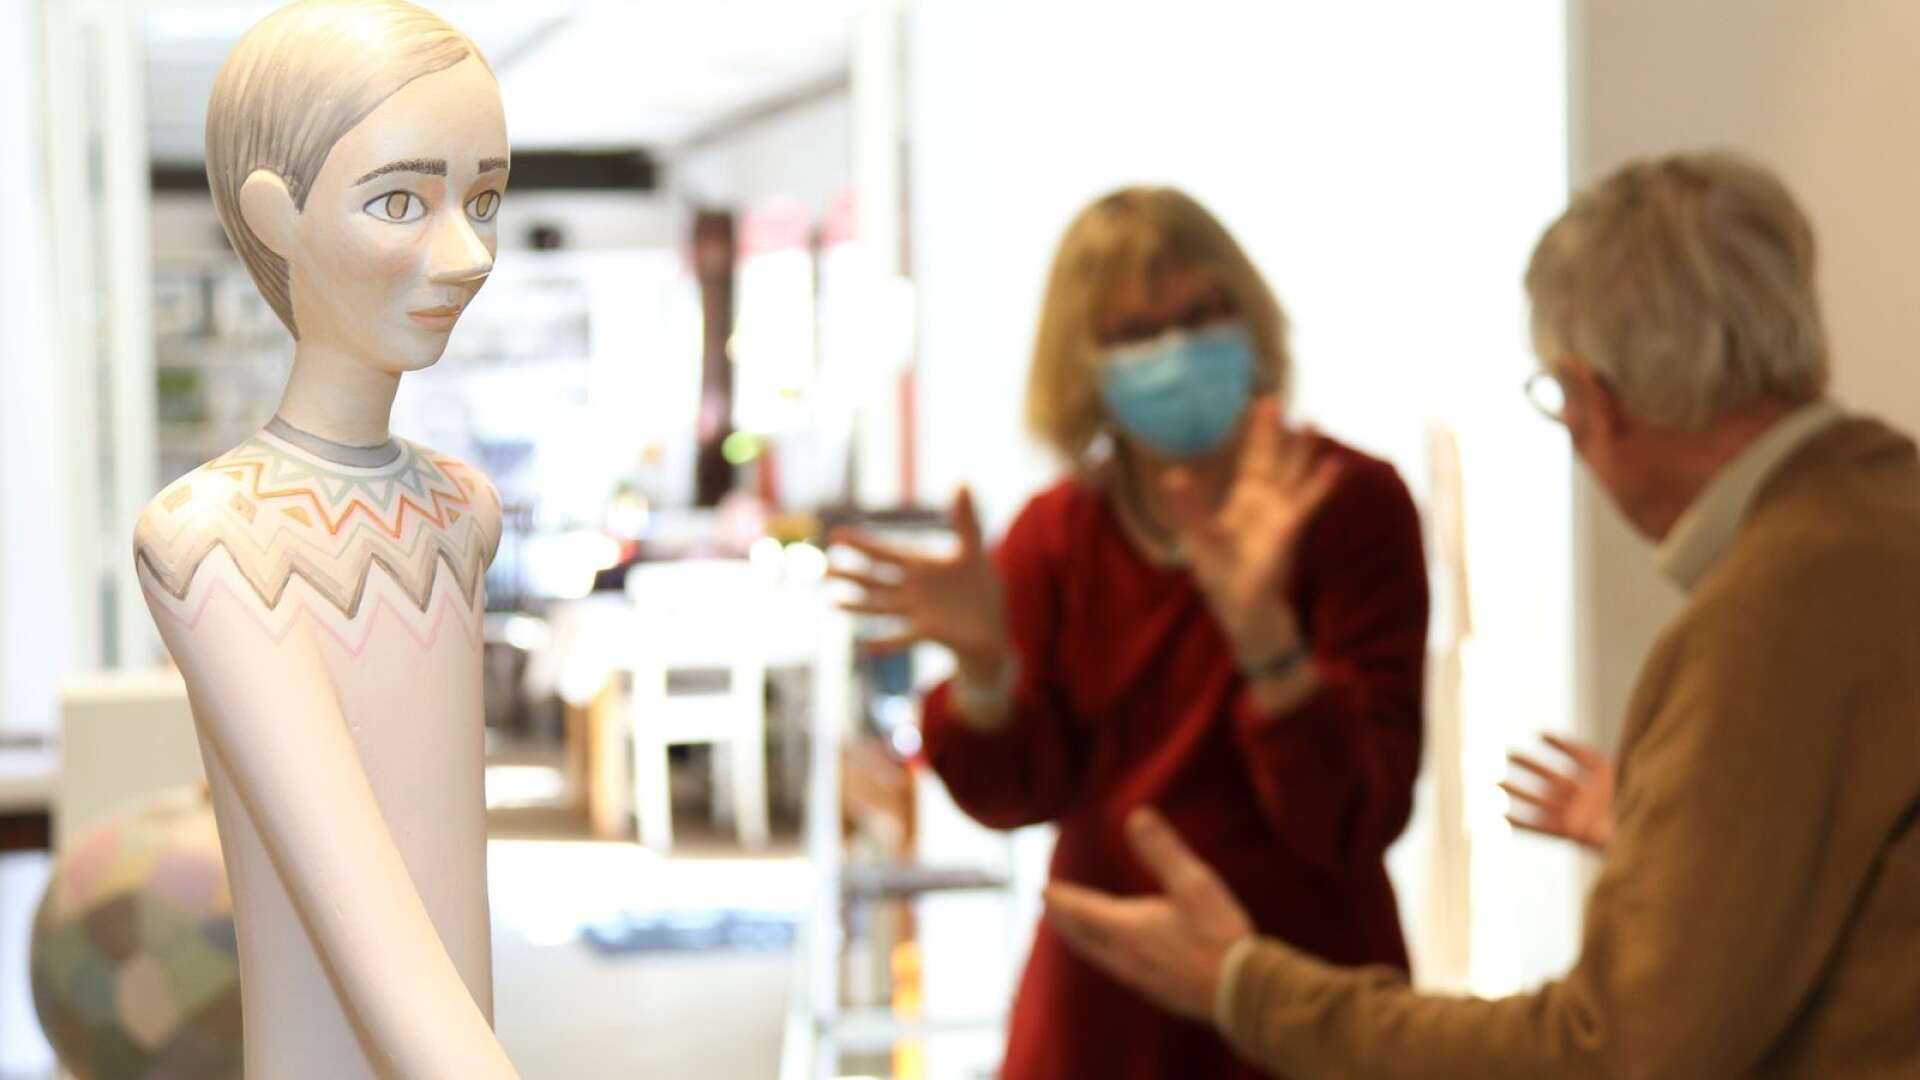 Sara Nilsson, Olsäter, ställer ut skulpturer av bland annat en kvinna i papier-maché.